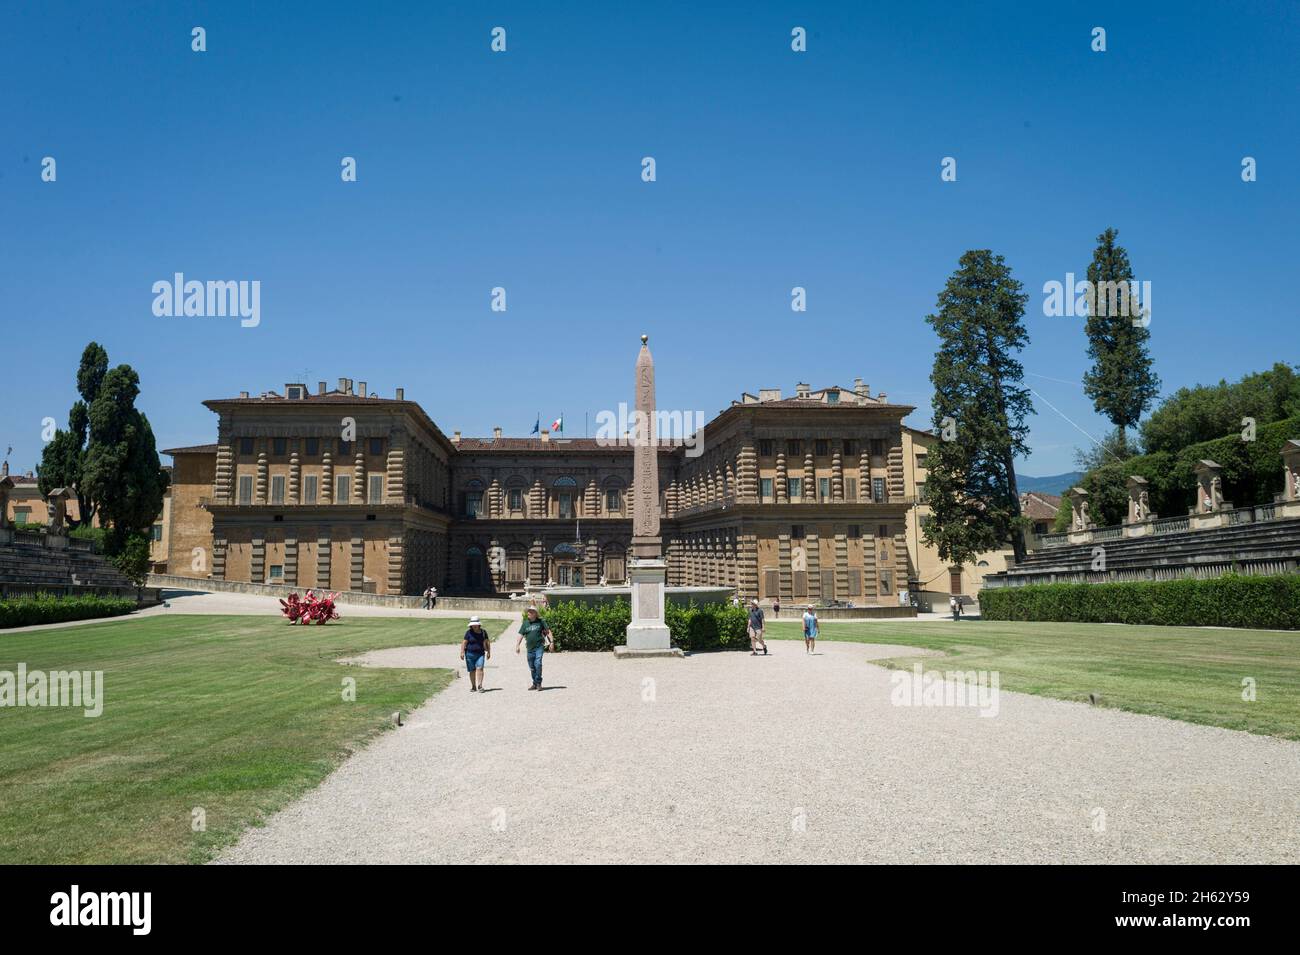 Der boboli-Gartenpark (Giardino di boboli), neptunbrunnen und ein Fernblick auf den palazzo pitti, in englischer Sprache auch Palazzo pitti genannt, in florenz, italien. Beliebte Touristenattraktion und Reiseziel. Stockfoto